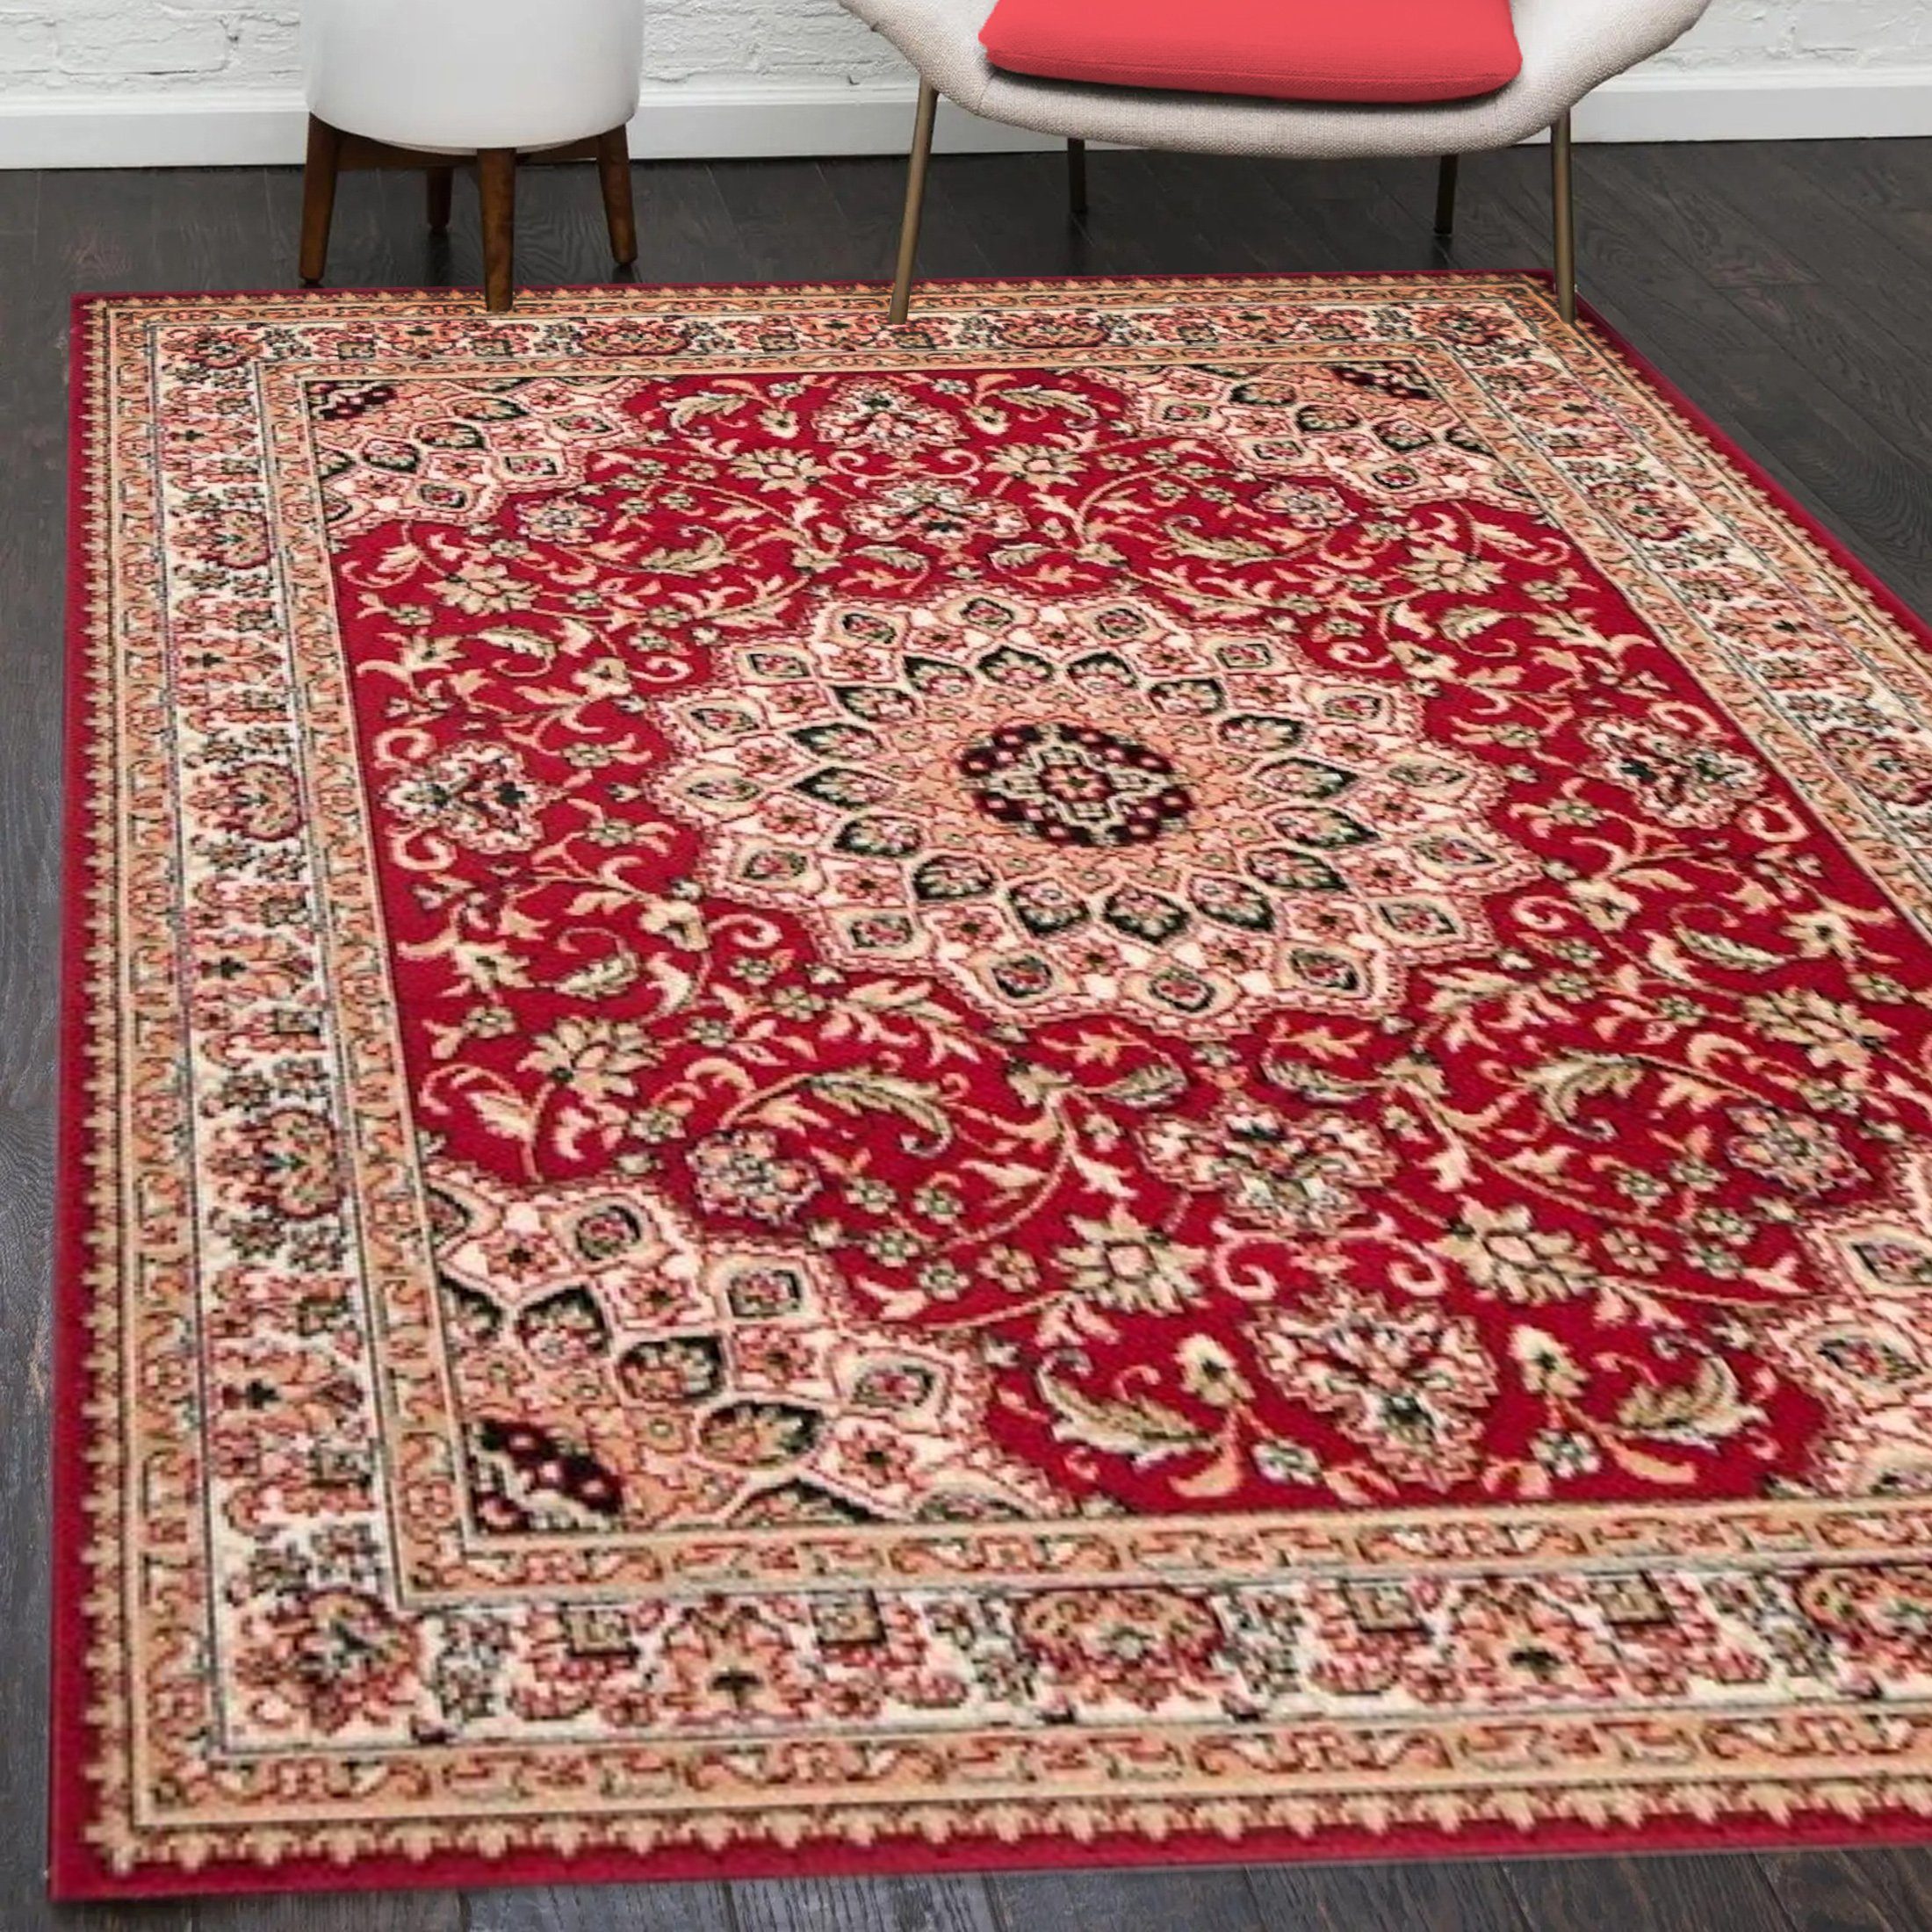 Orientteppich Orientalisch Vintage Teppich Kurzflor Wohnzimmerteppich Rot, Mazovia, 60 x 100 cm, Fußbodenheizung, Allergiker geeignet, Farbecht, Pflegeleicht Rot / F740A-RED | Alle Teppiche